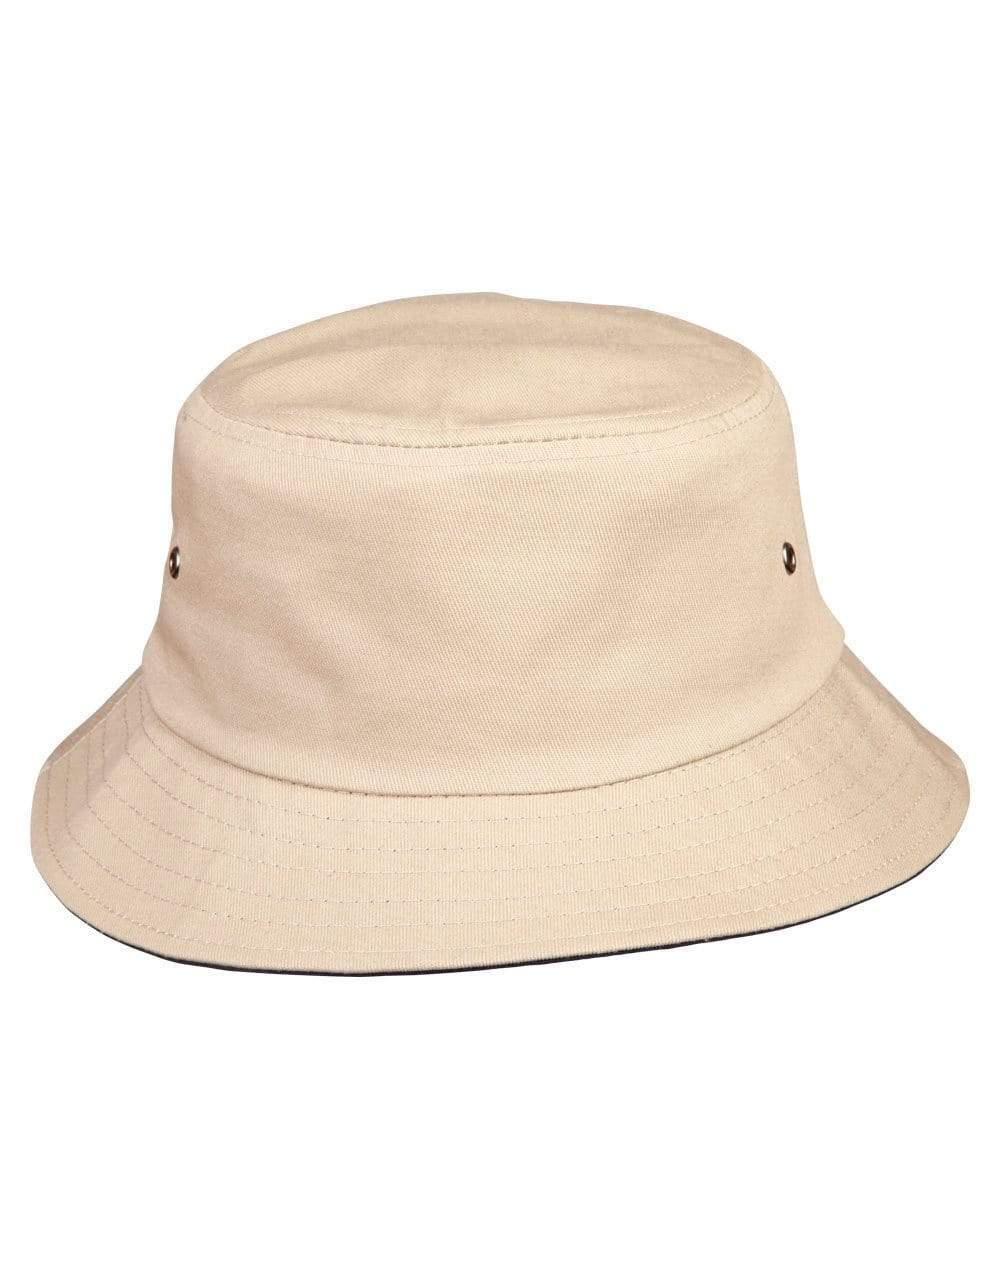 Bucket Hat Ch32a Active Wear Winning Spirit Sand/Dark Navy Underbrim S/M 